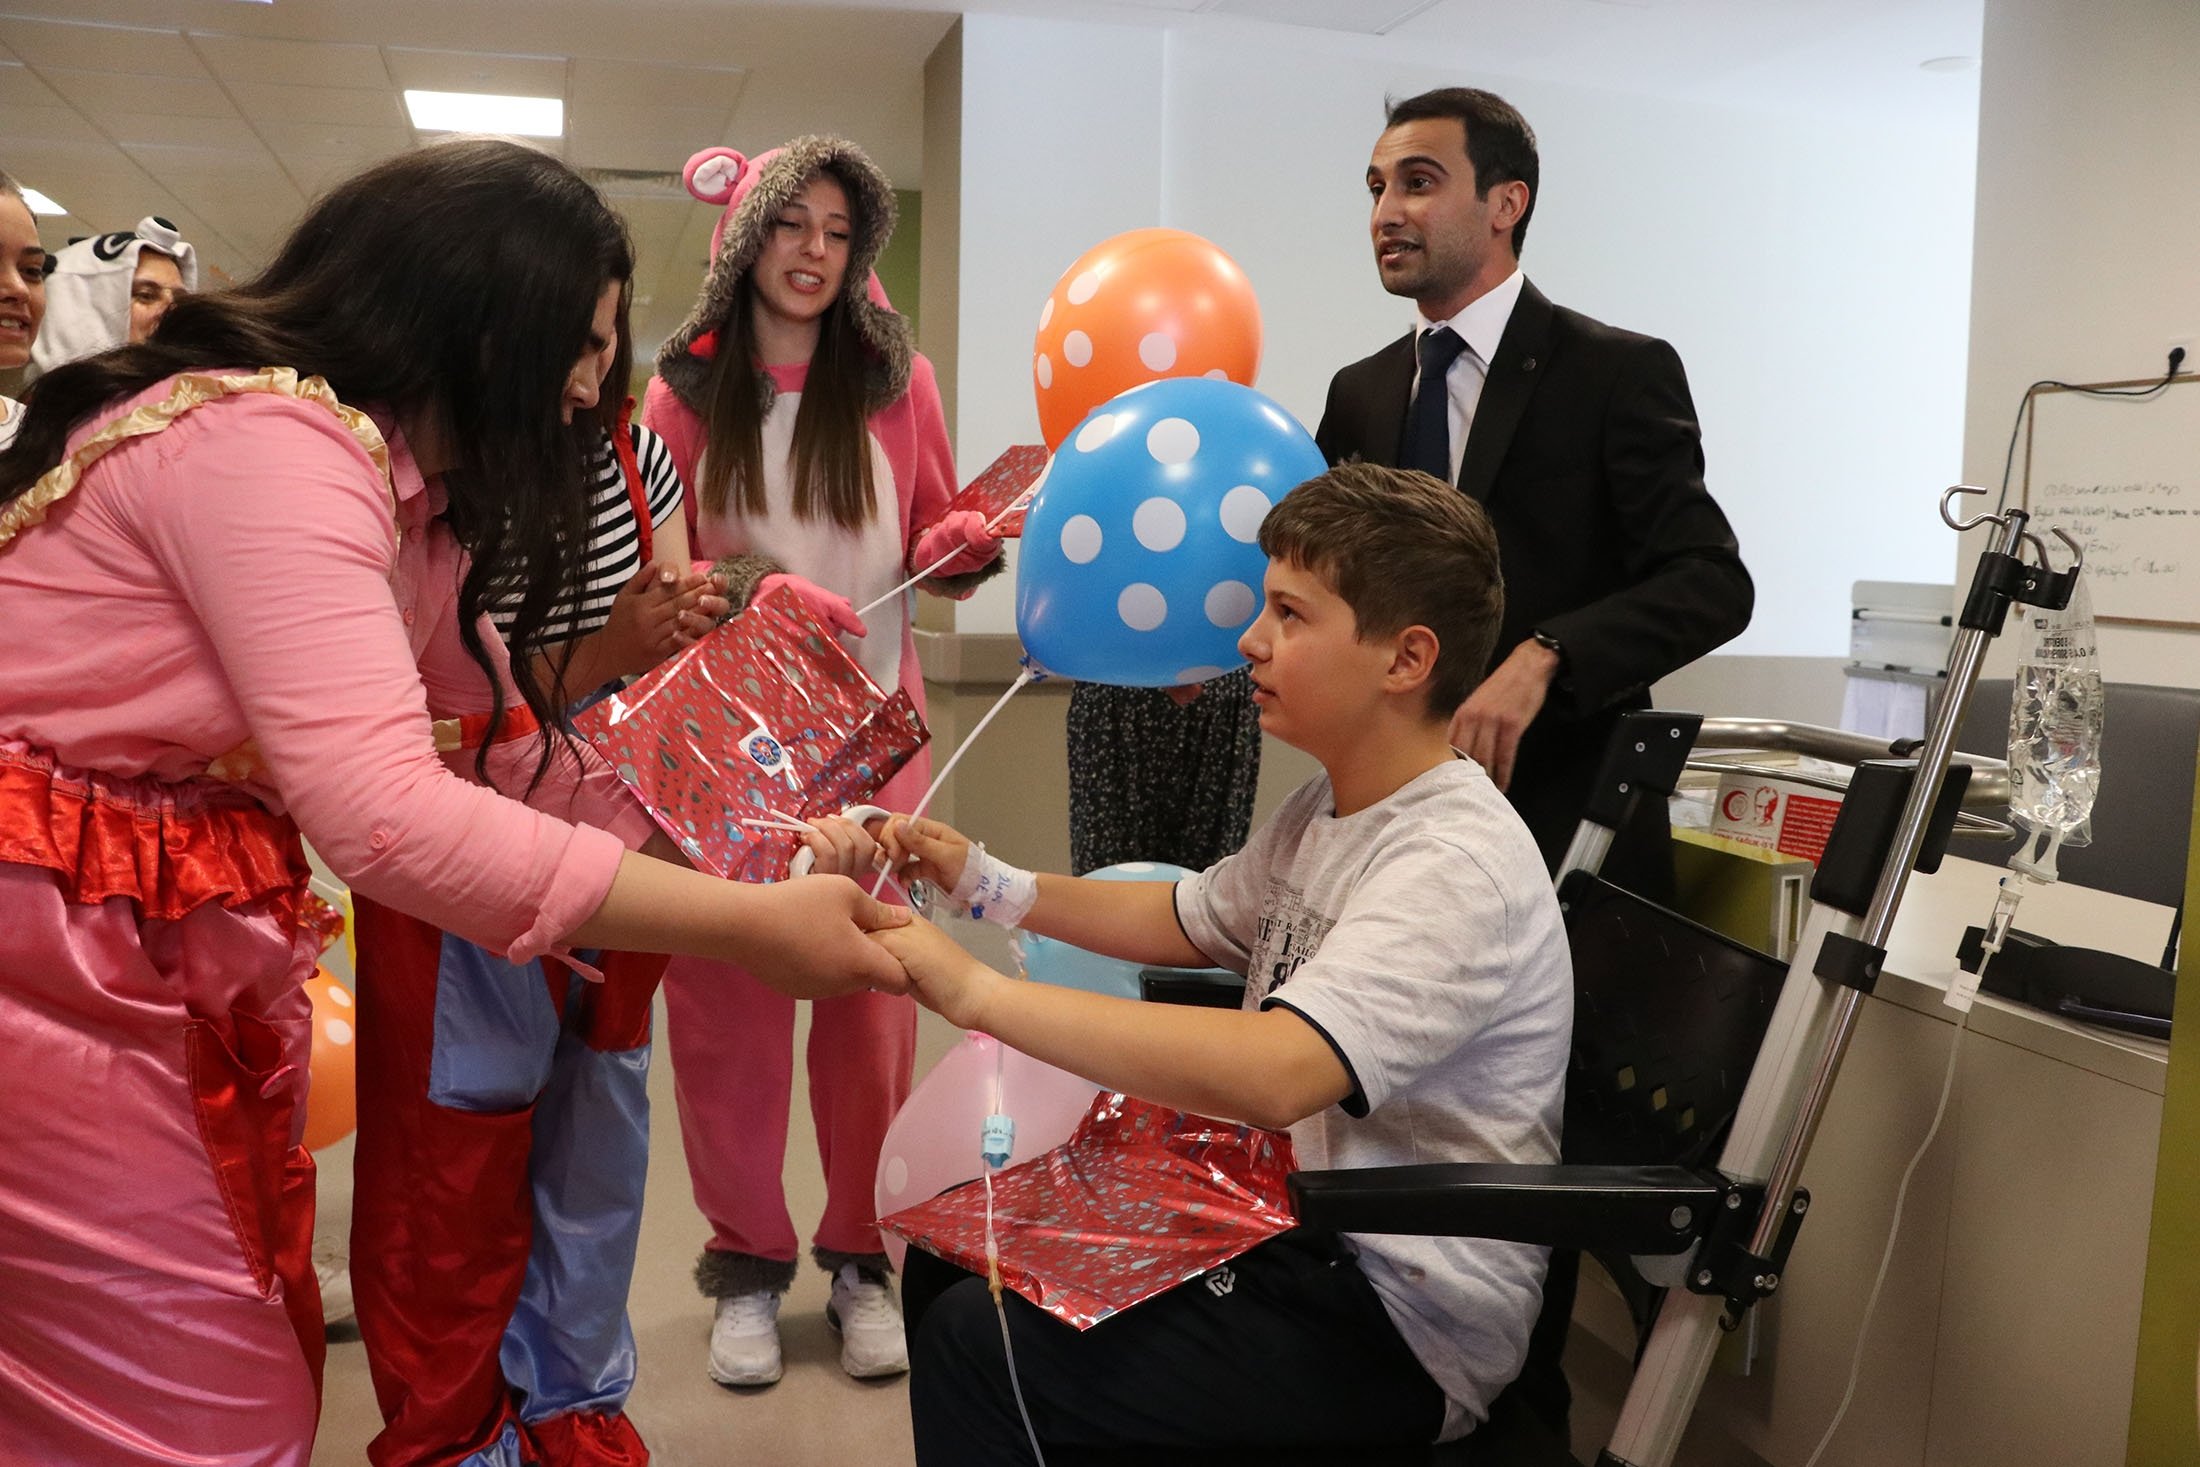 Seorang calon perawat memberikan hadiah kepada seorang anak saat mereka menjalankan kegiatan untuk menghibur anak-anak di Rumah Sakit Kota Kayseri, Kayseri, Turki, 5 Juni 2022. (AA Photo)